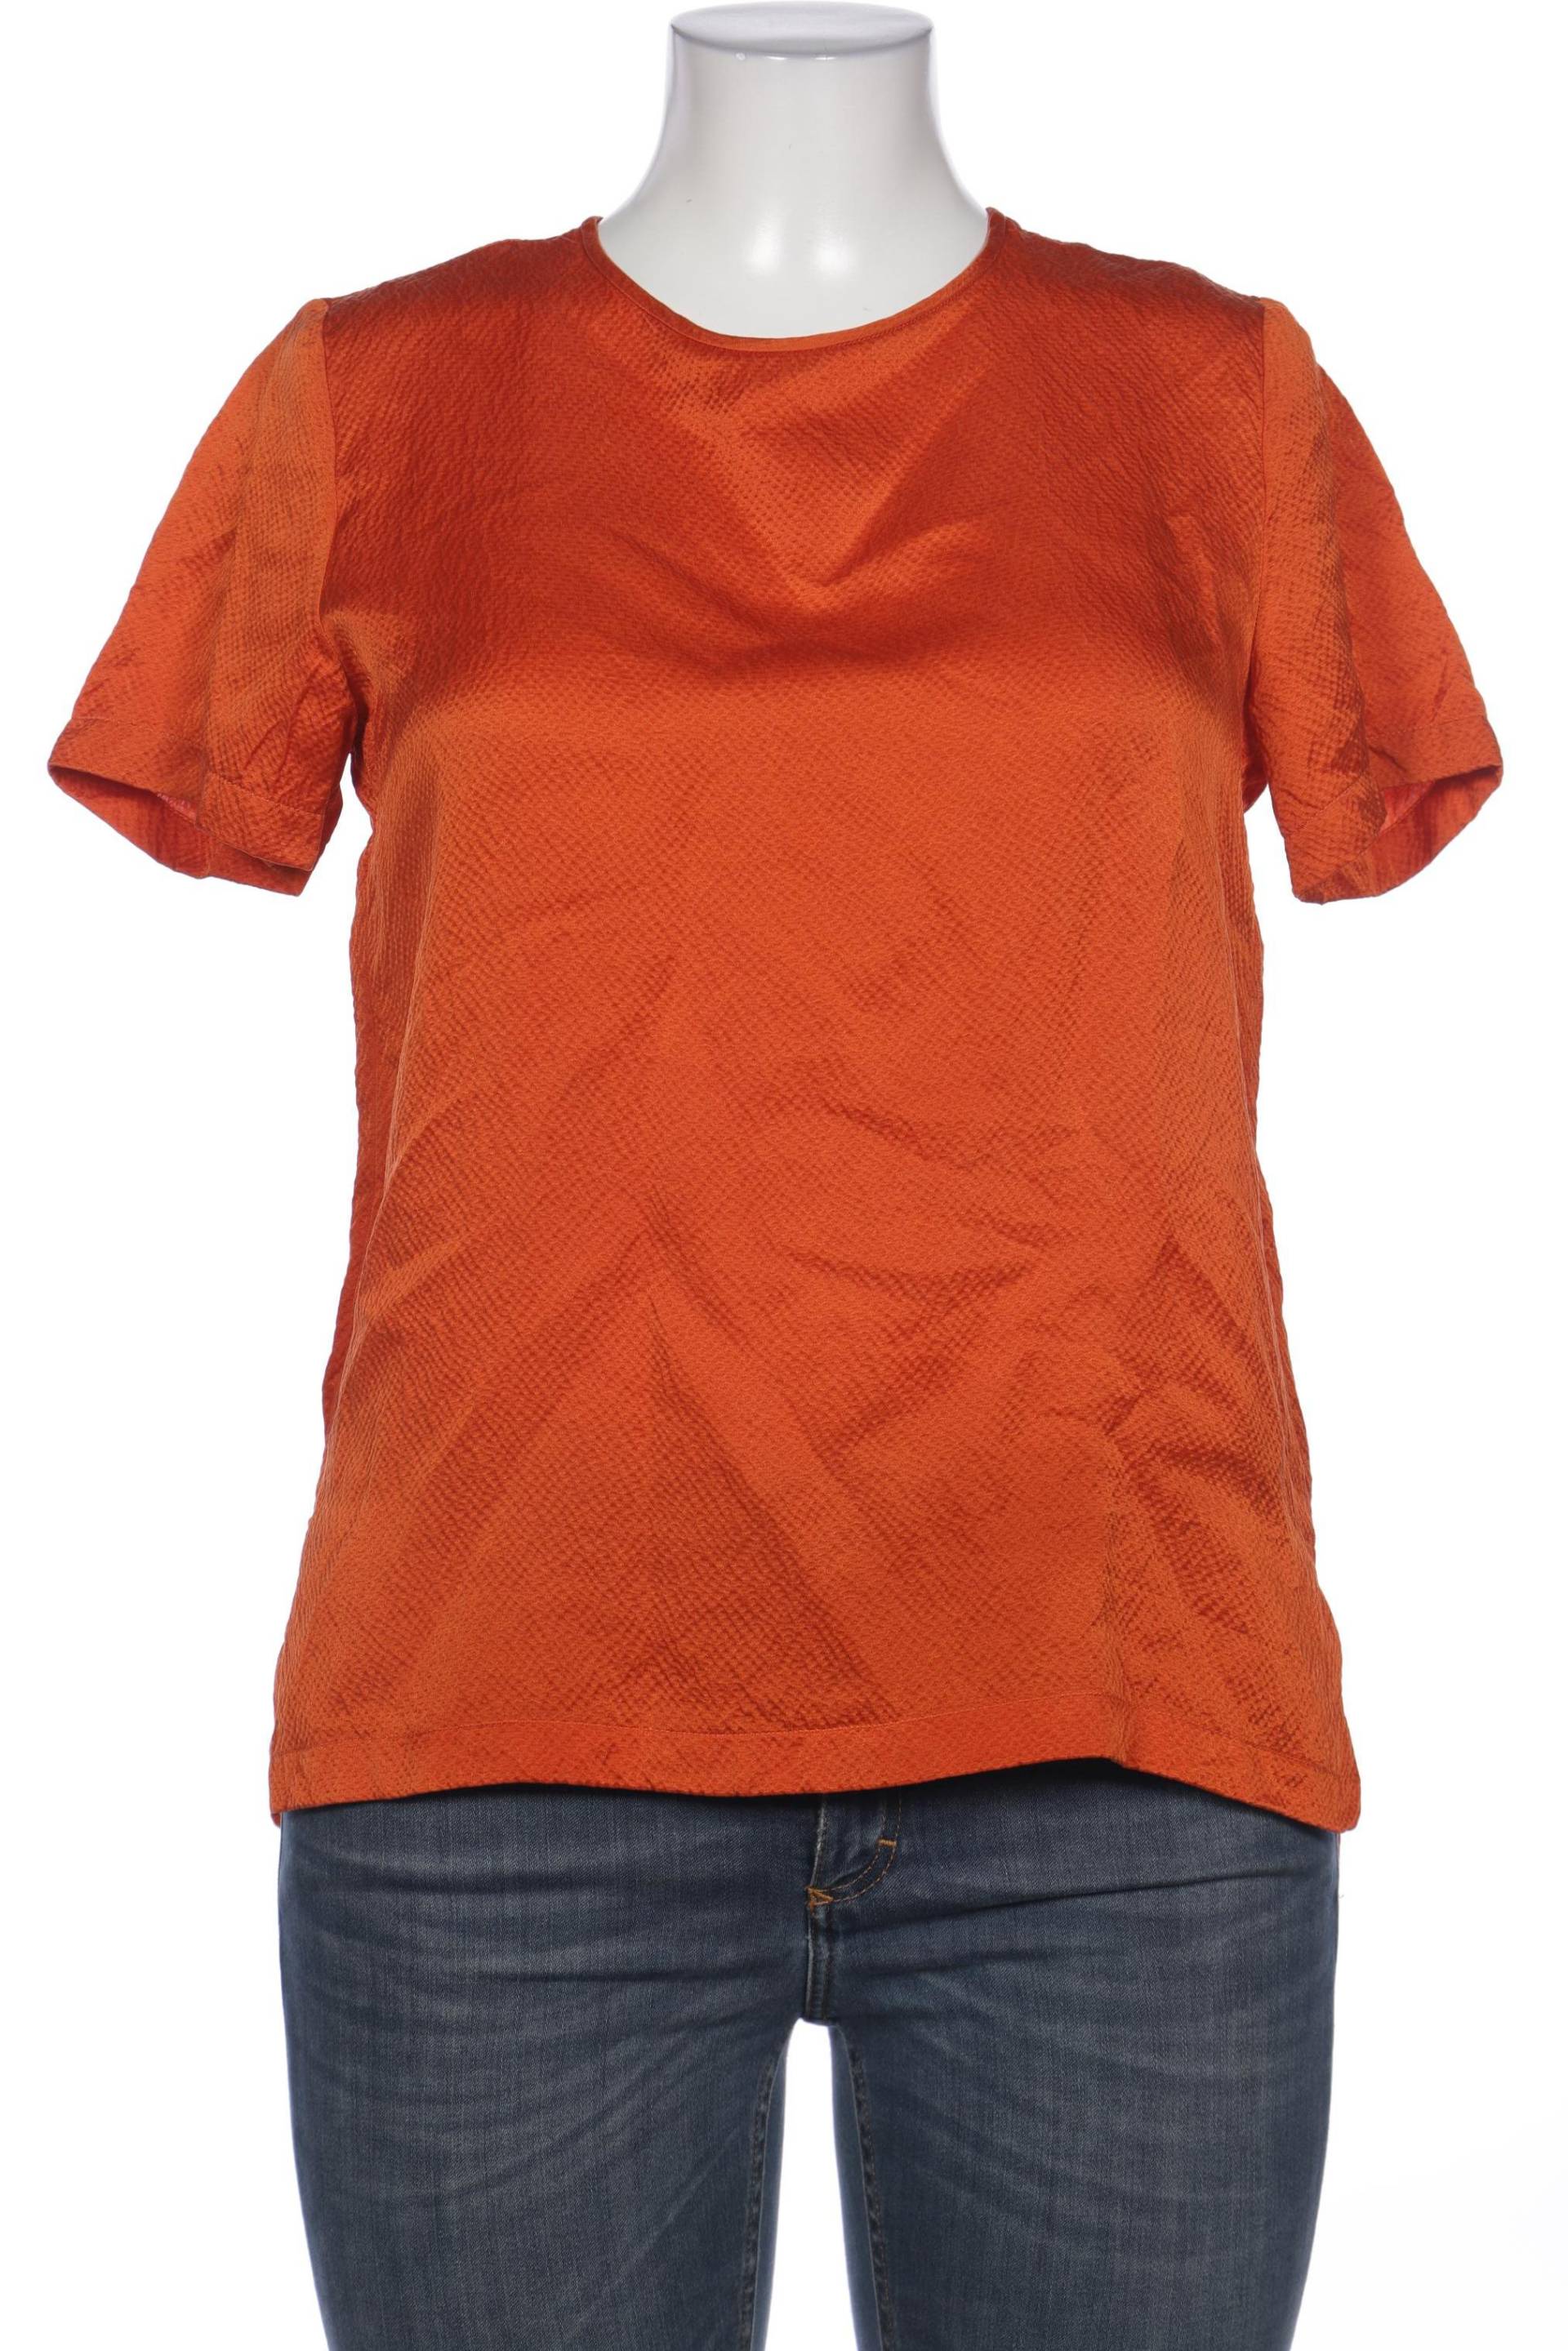 Max Mara Damen Bluse, orange, Gr. 44 von Max Mara